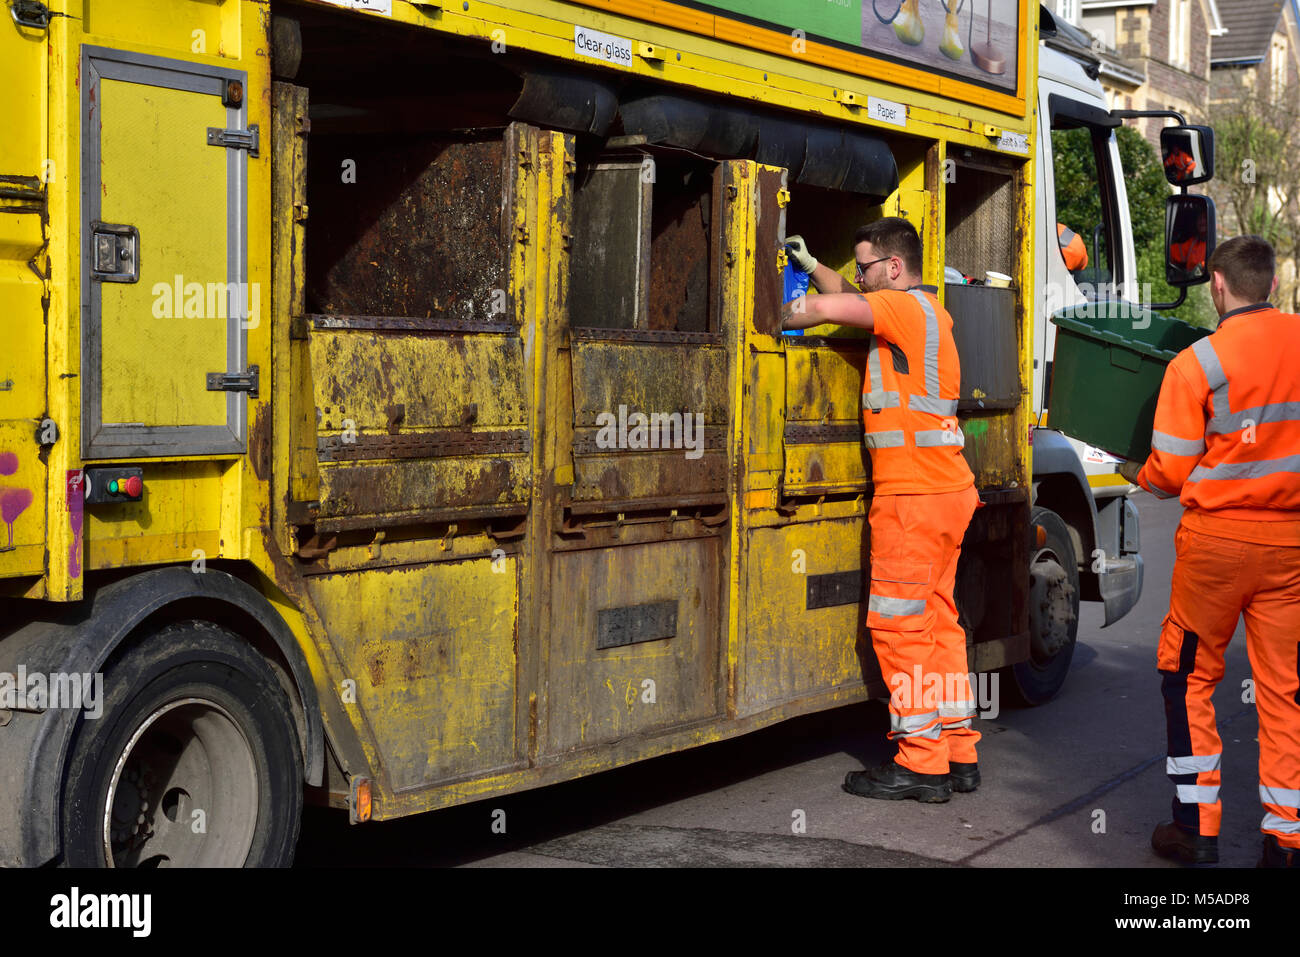 Collecte de recyclage camion avec des ouvriers sur tours faisant le tri qu'ils recueillent, UK Banque D'Images